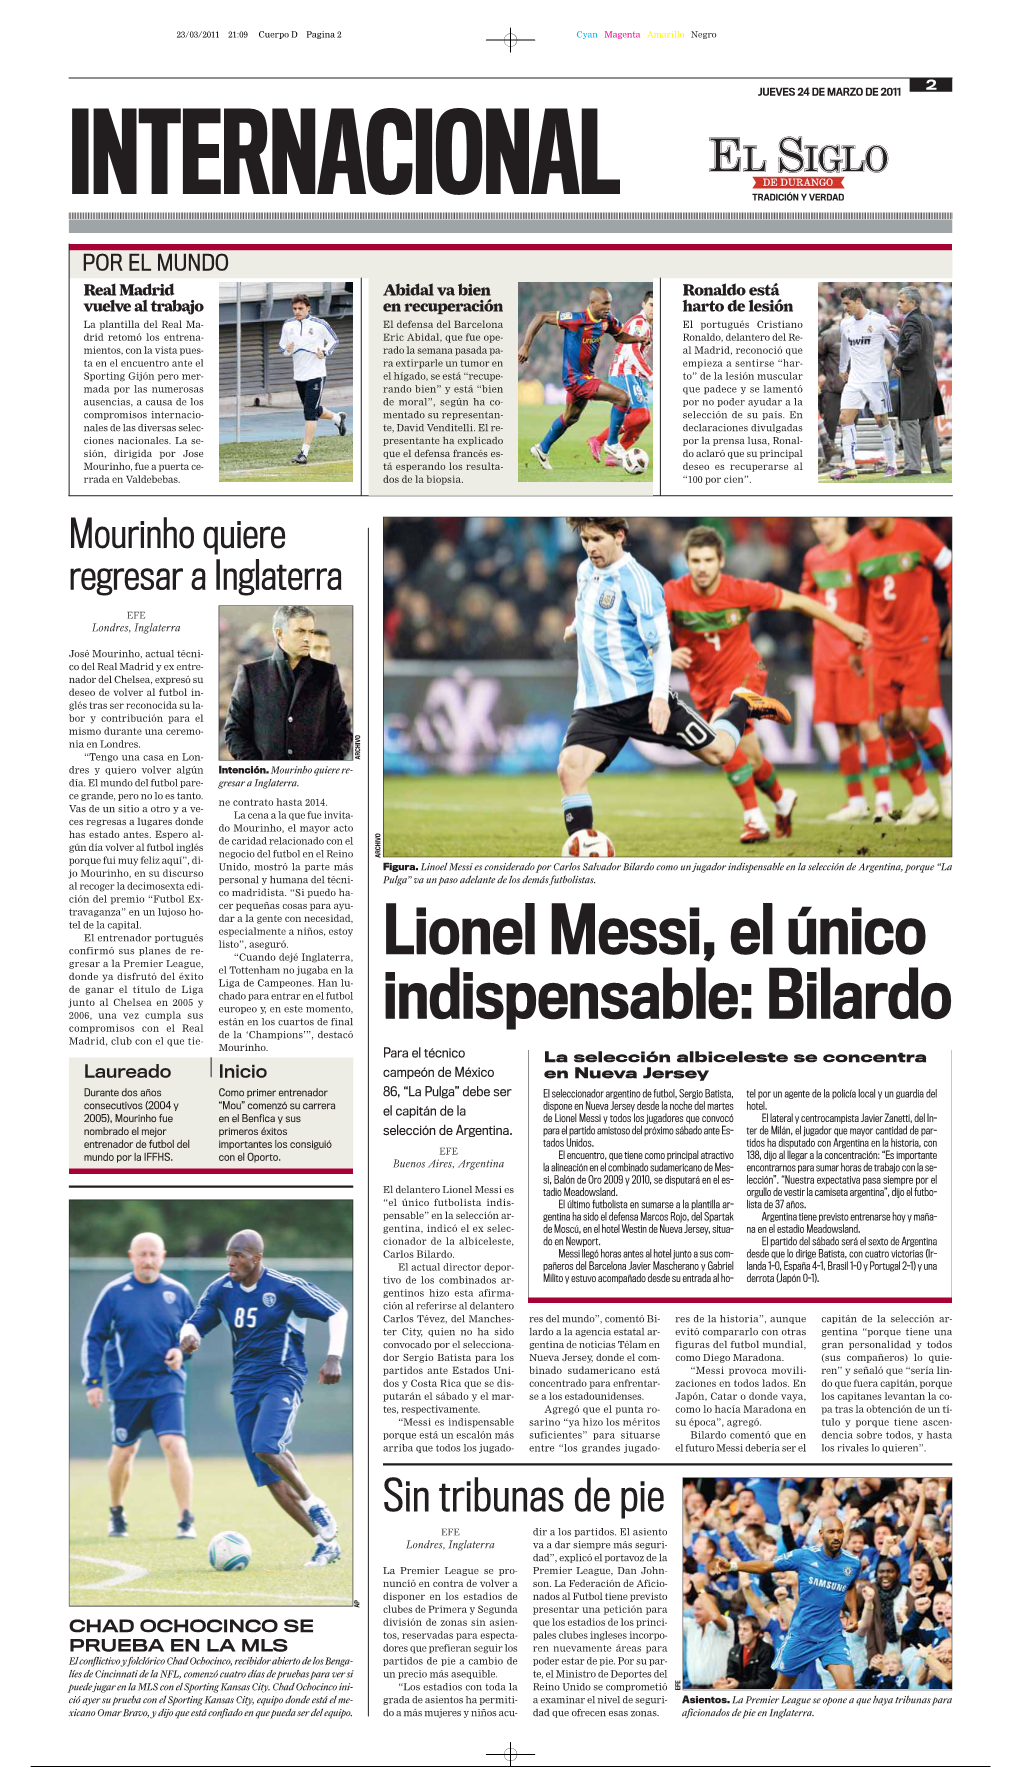 Lionel Messi, El Único Indispensable: Bilardo